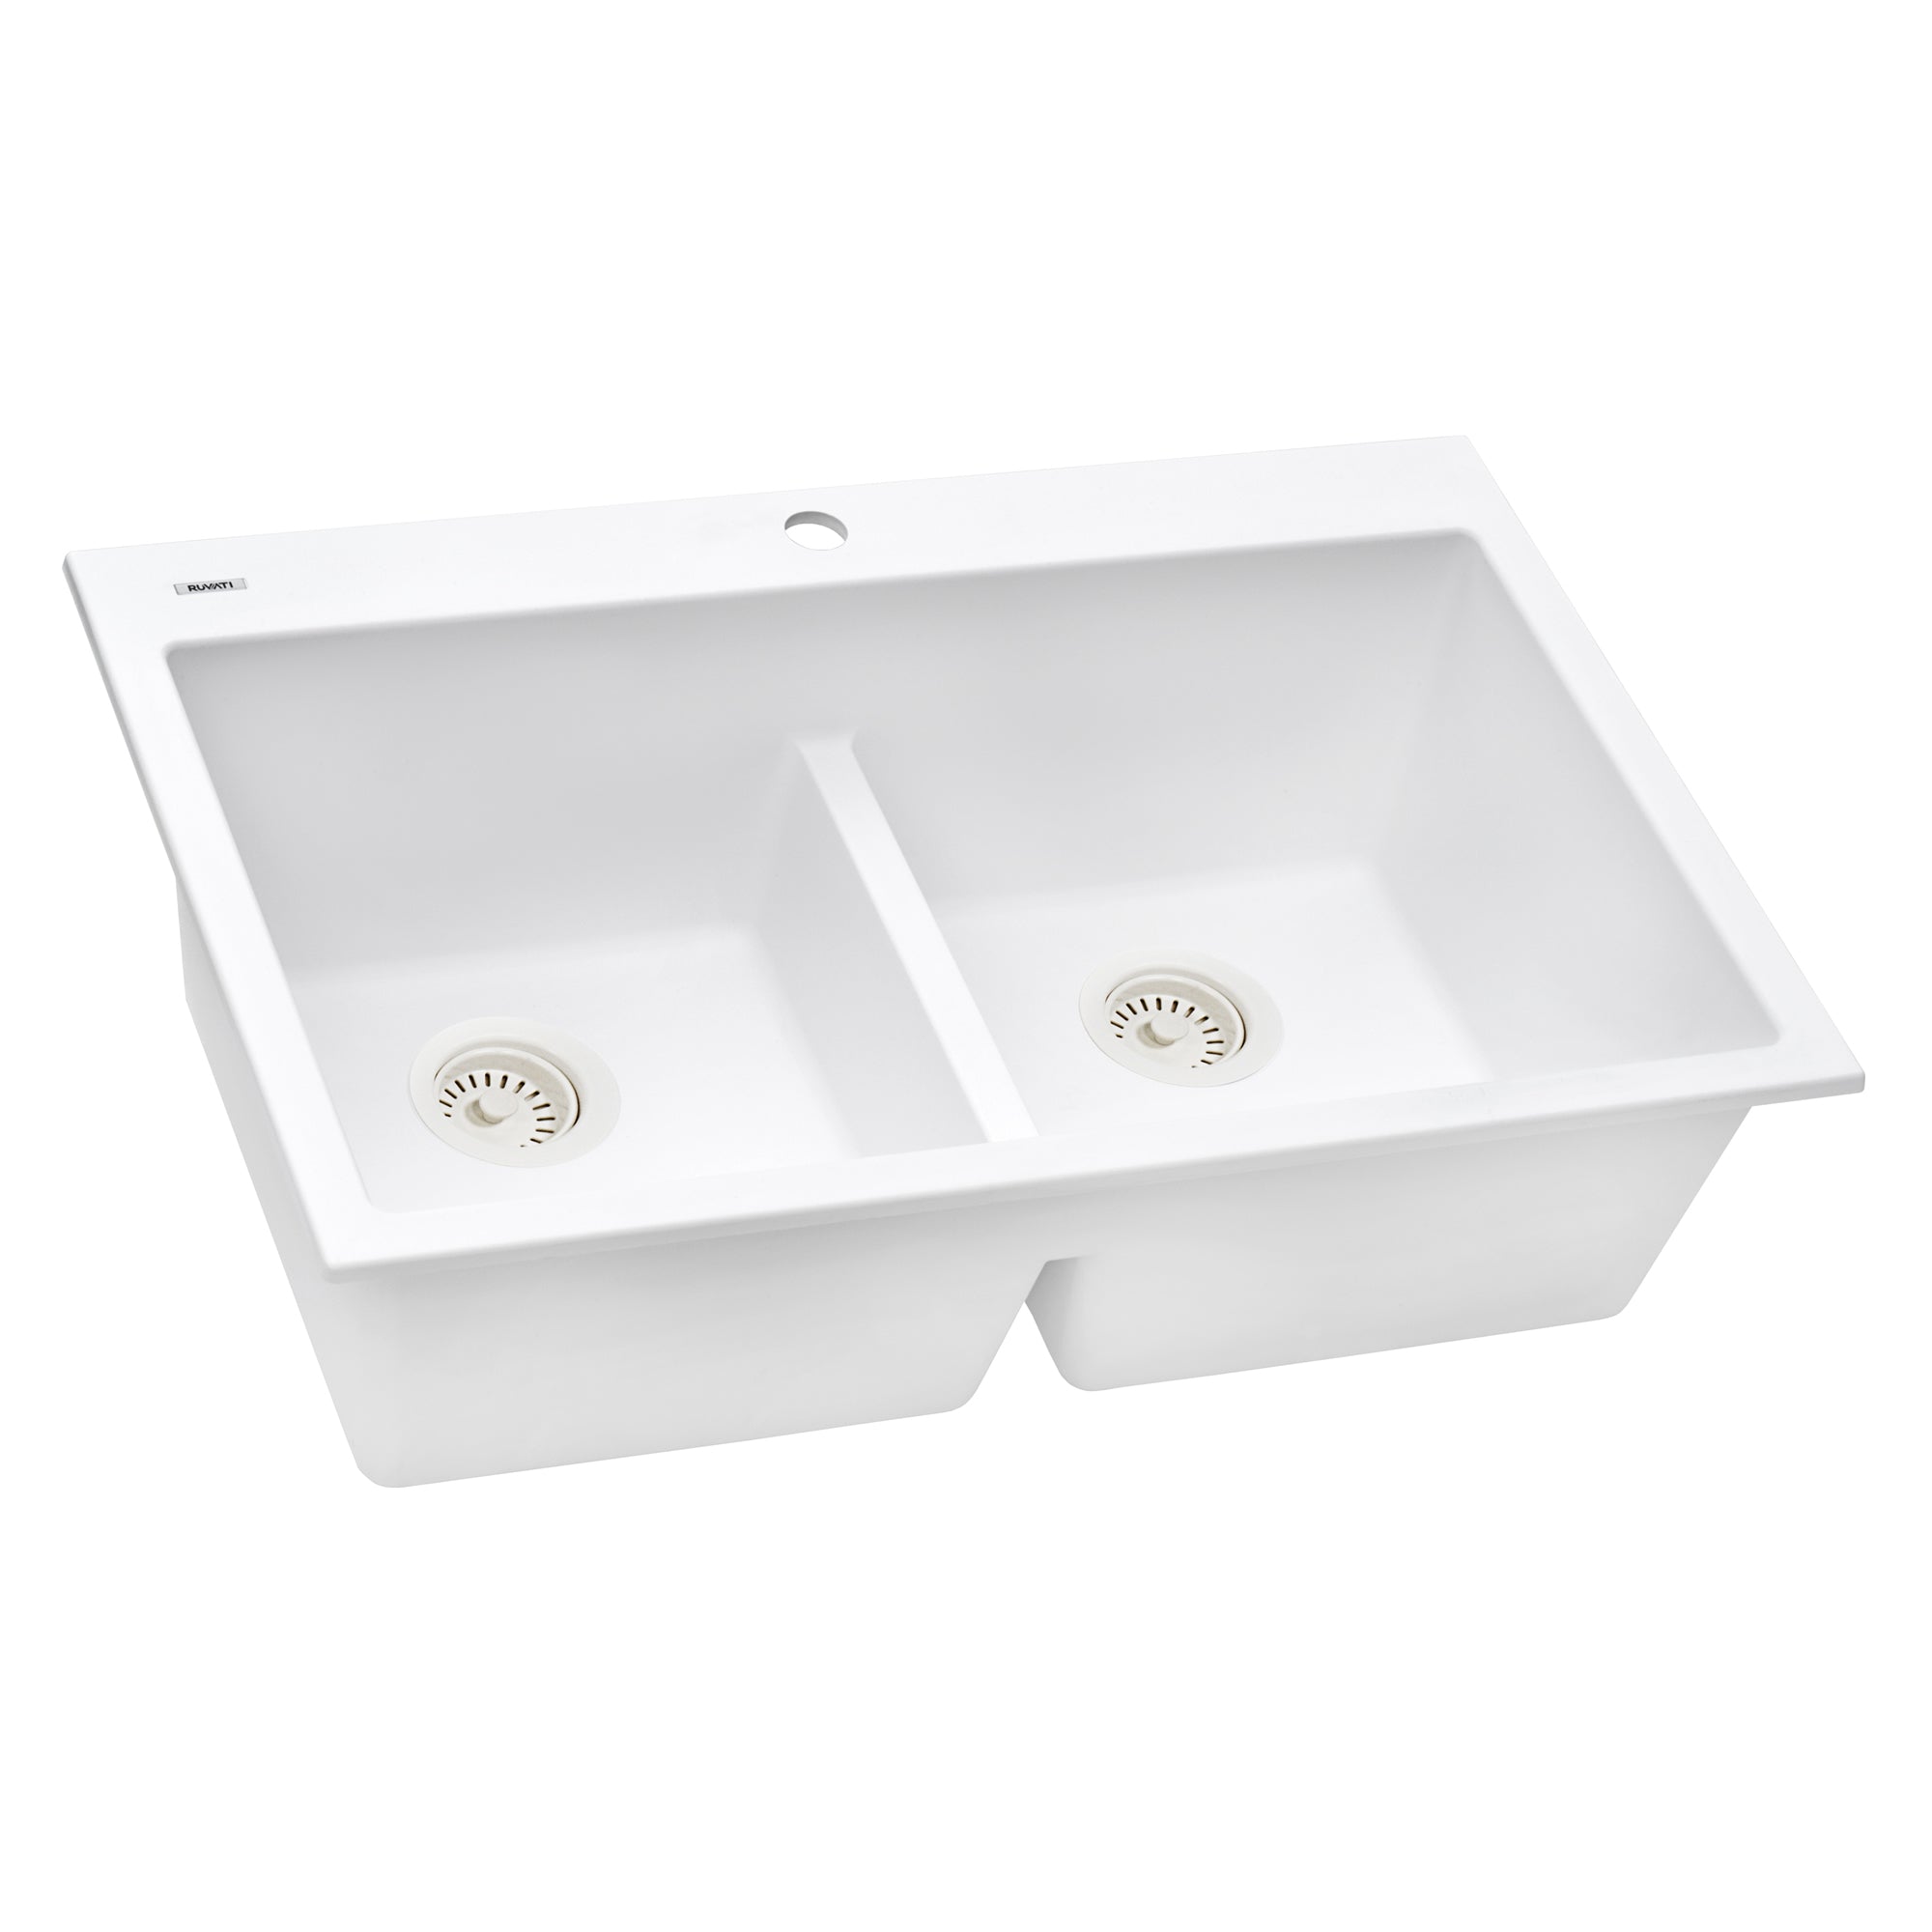 Ruvati 33 x 22" epiGranite Drop-in Topmount Granite Composite Double Bowl Low Divide Kitchen Sink